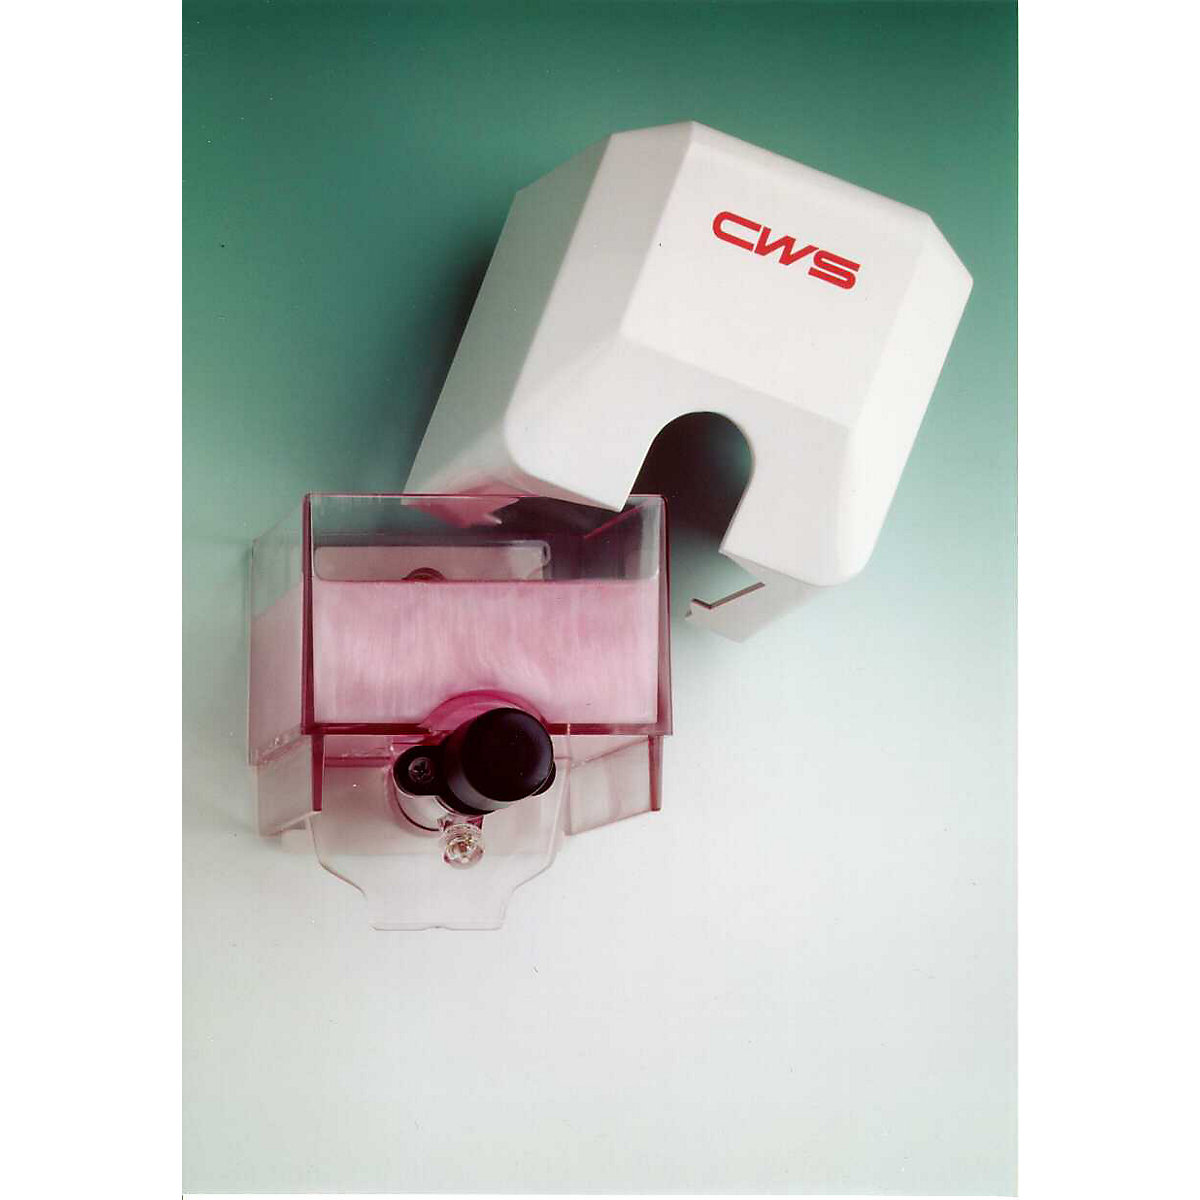 CWS – Shower gel and soap dispenser